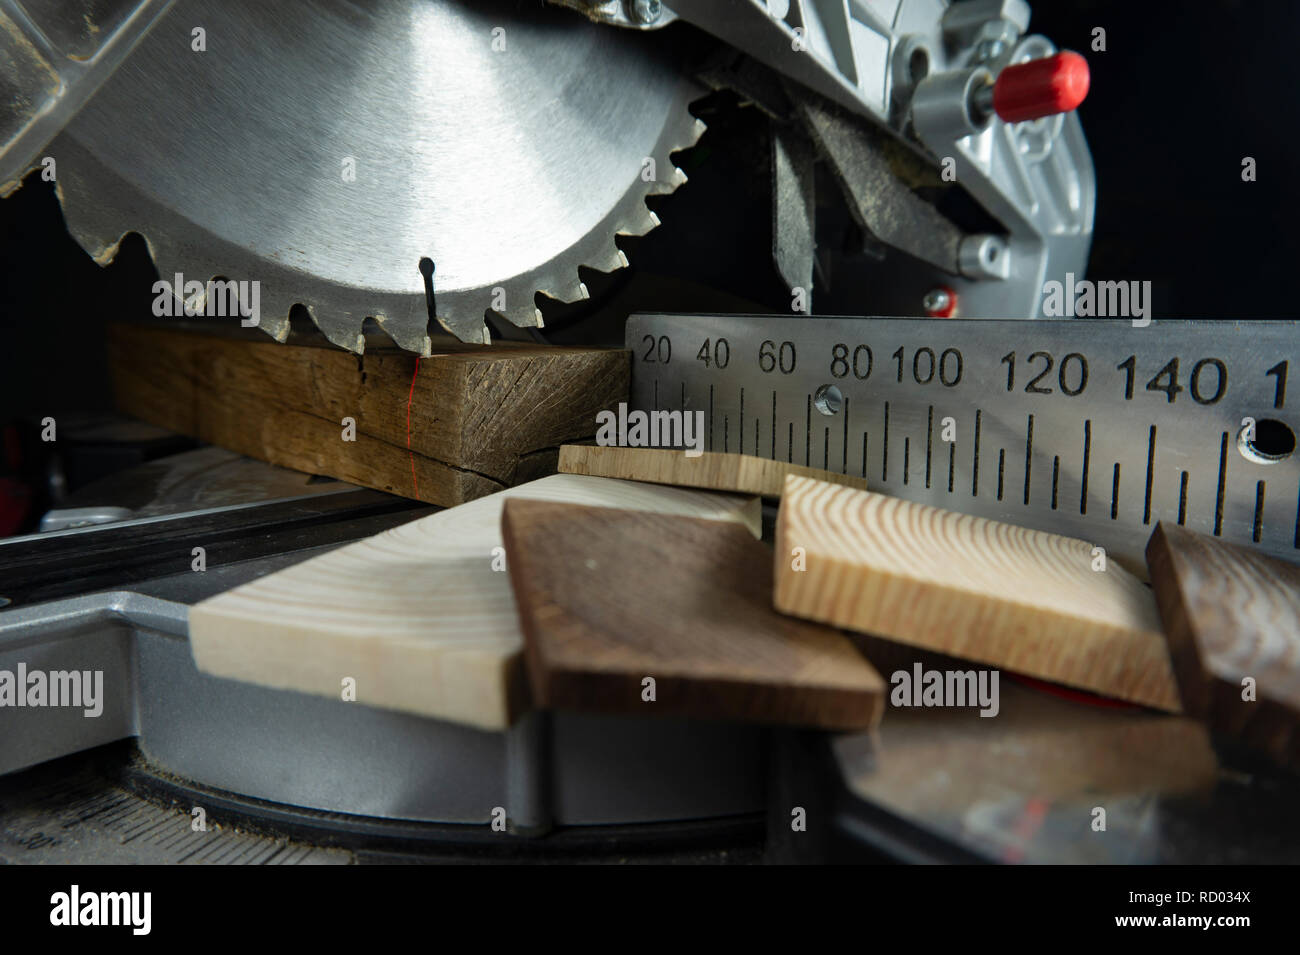 Zähne auf einer kreisförmigen Motorsäge in Nahaufnahme mit verschiedenen Bausteinen aus Holz und Metall Maßstab für Schnittlängen in einem Holzbearbeitung workshop Stockfoto